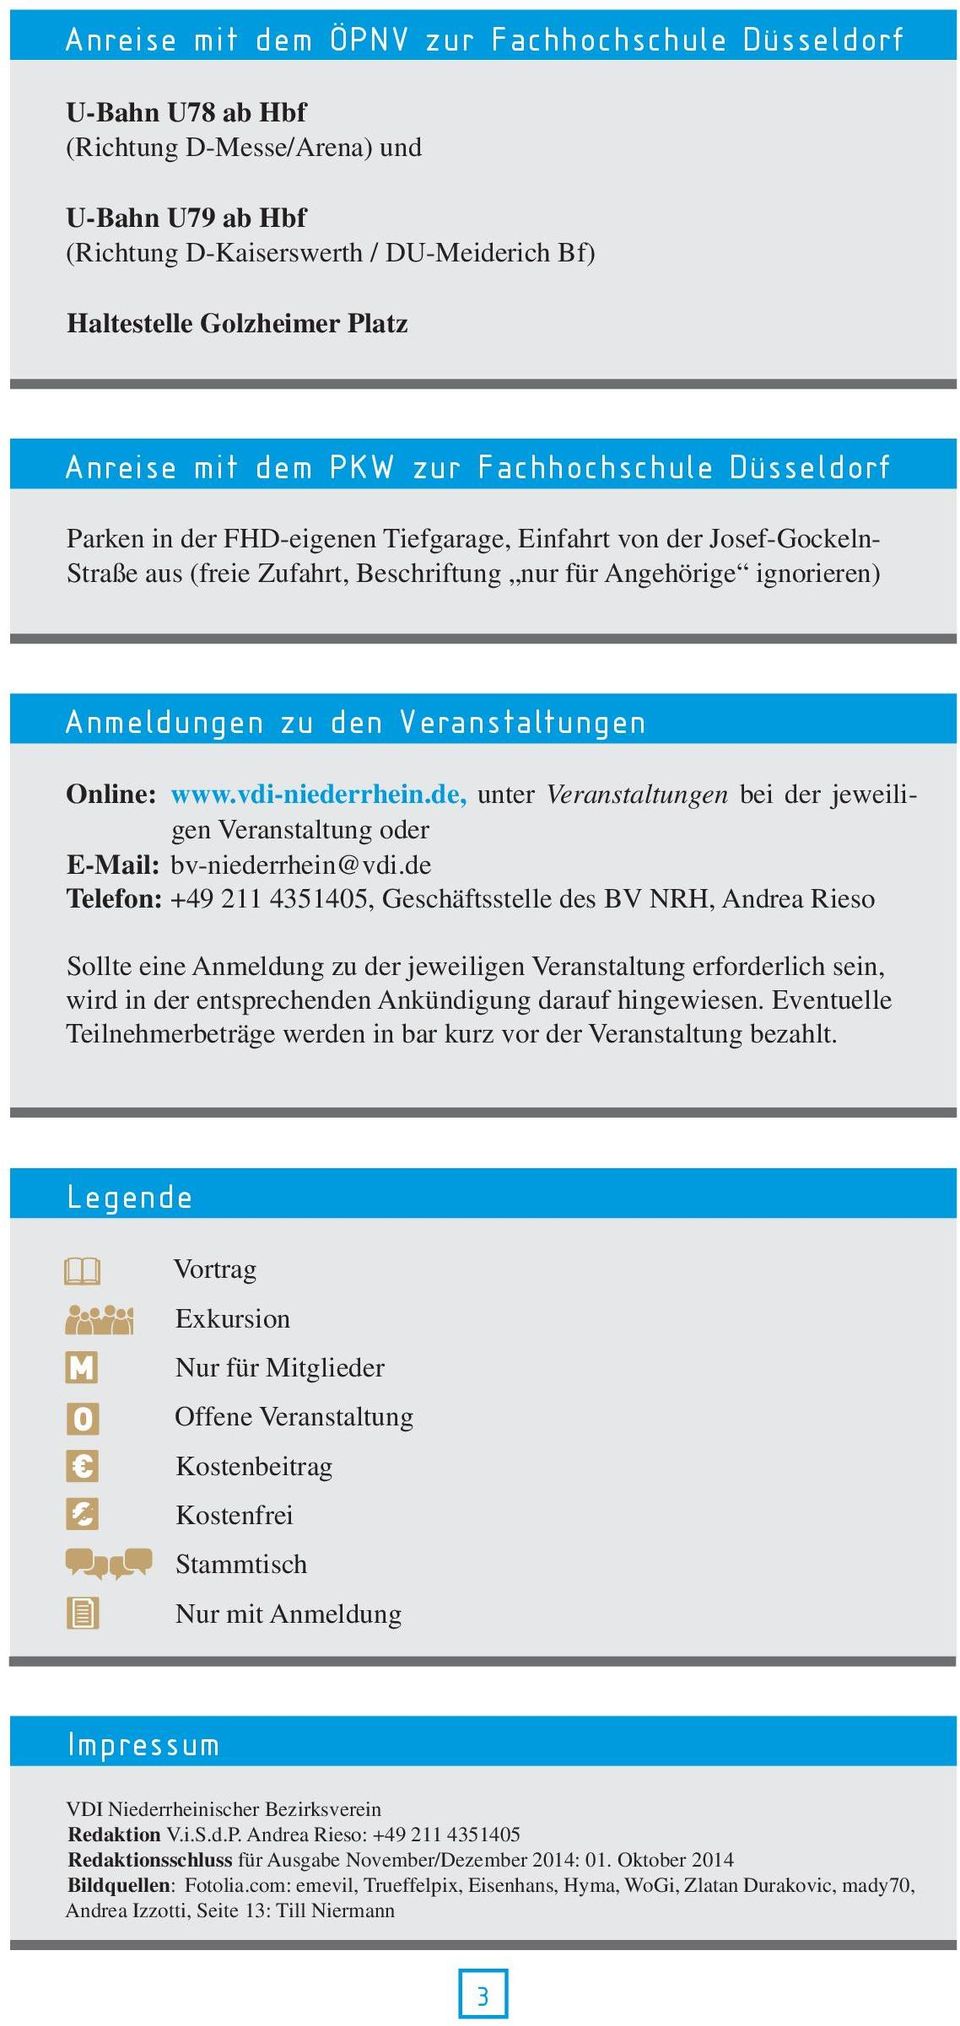 den Veranstaltungen Online: www.vdi-niederrhein.de, unter Veranstaltungen bei der jeweiligen Veranstaltung oder E-Mail: bv-niederrhein@vdi.